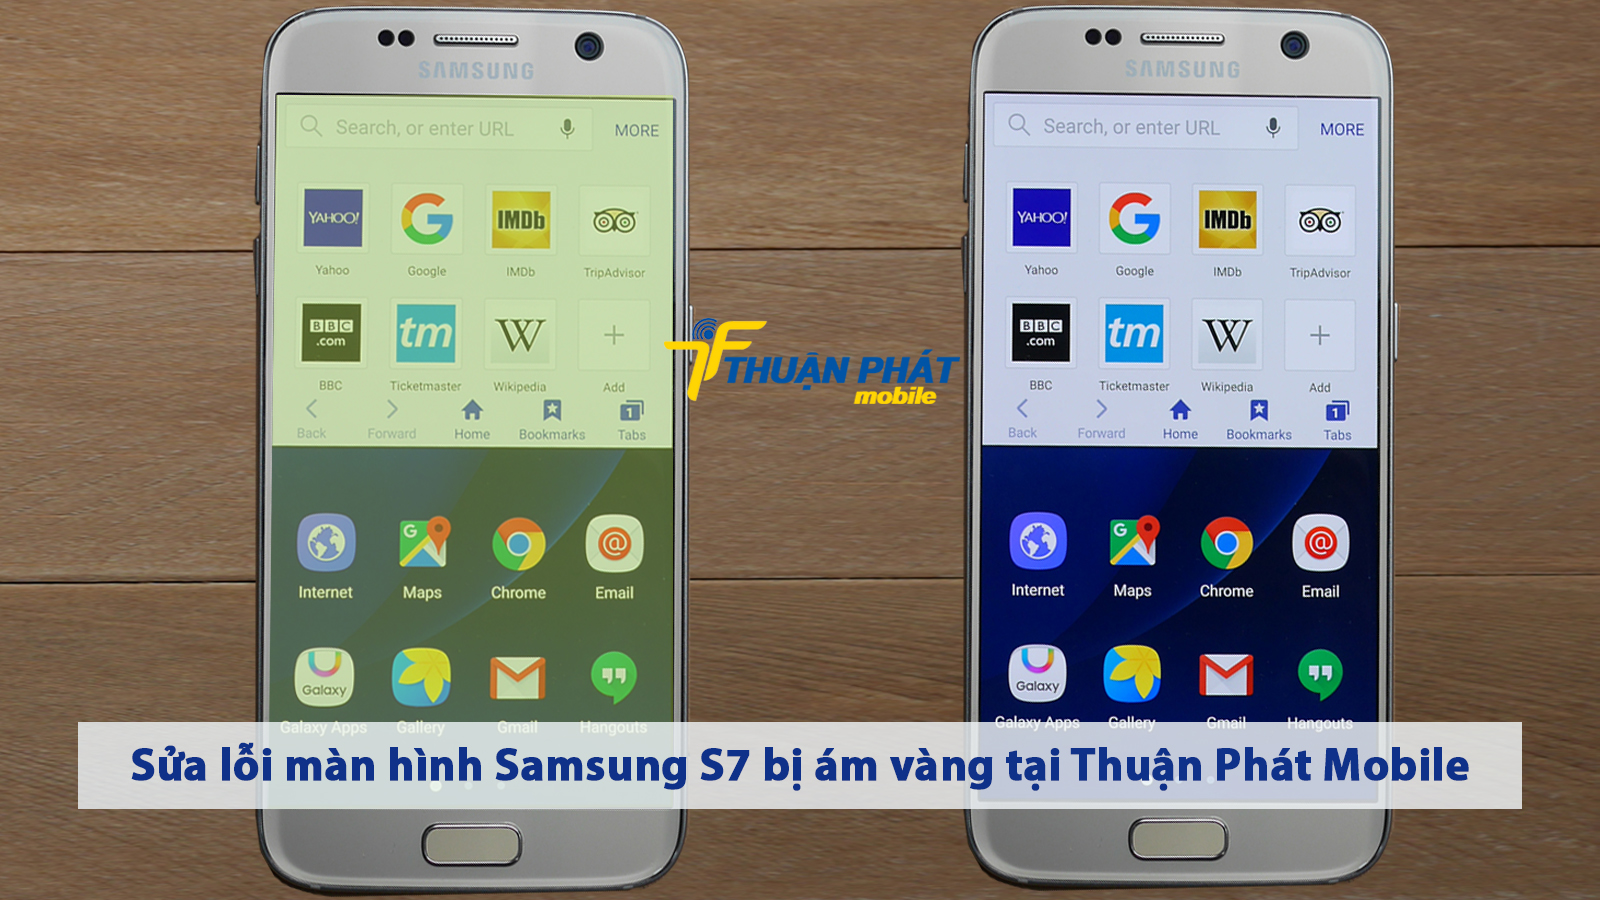 Sửa lỗi màn hình Samsung S7 bị ám vàng tại Thuận Phát Mobile